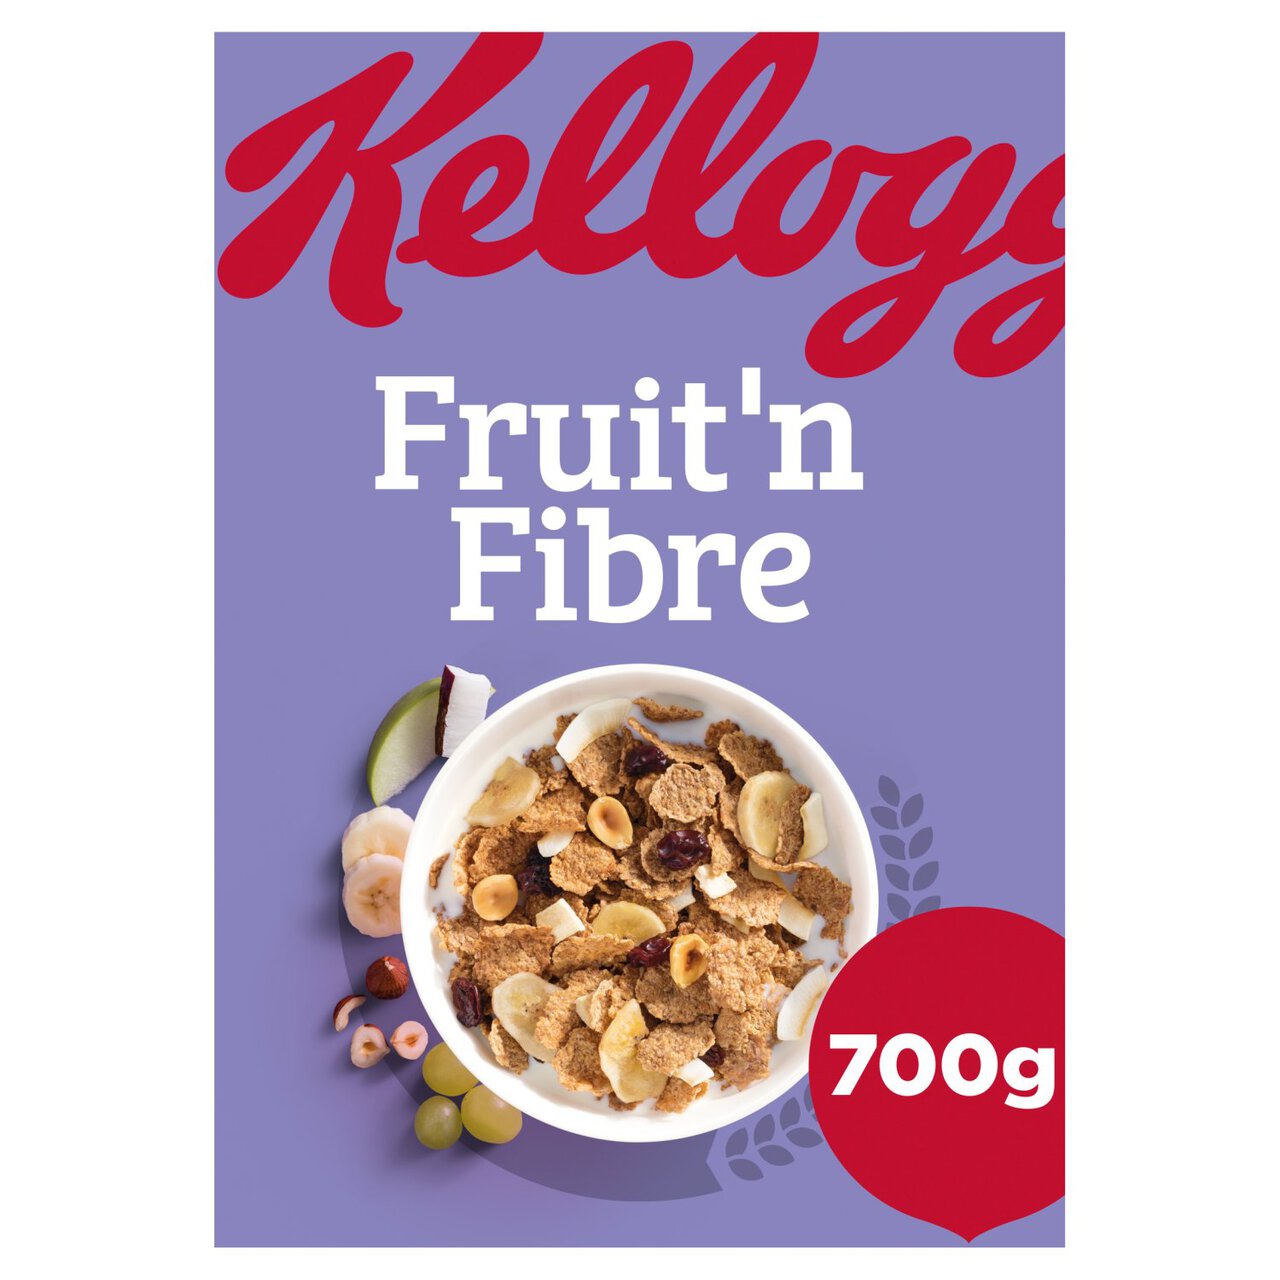 Kellogg's Fruit 'n Fibre 700g